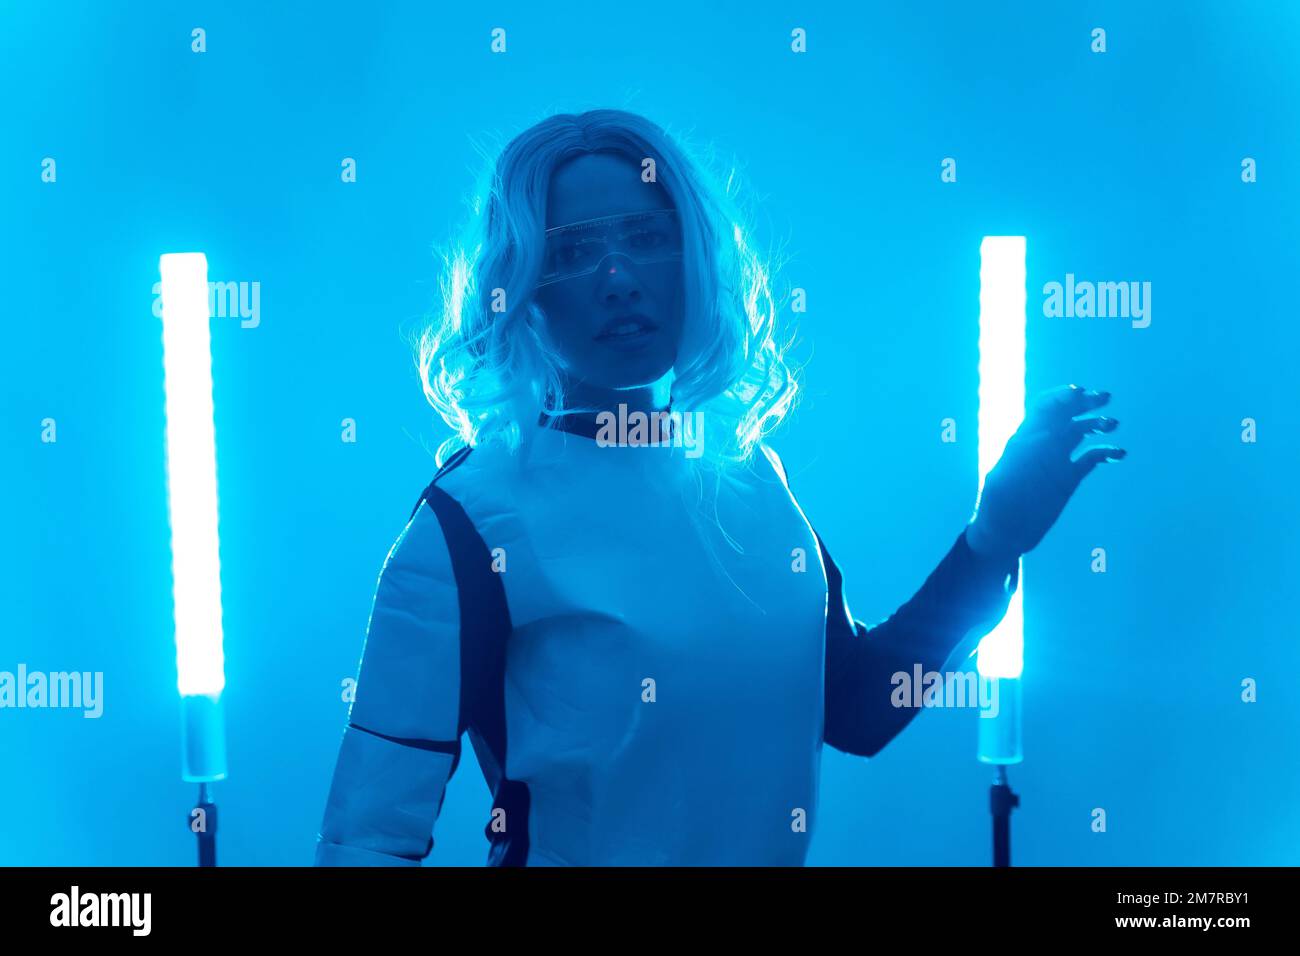 Giovane donna in costume futuristico e occhiali con luci a LED blu, virtuale o metaverse concetto Foto Stock